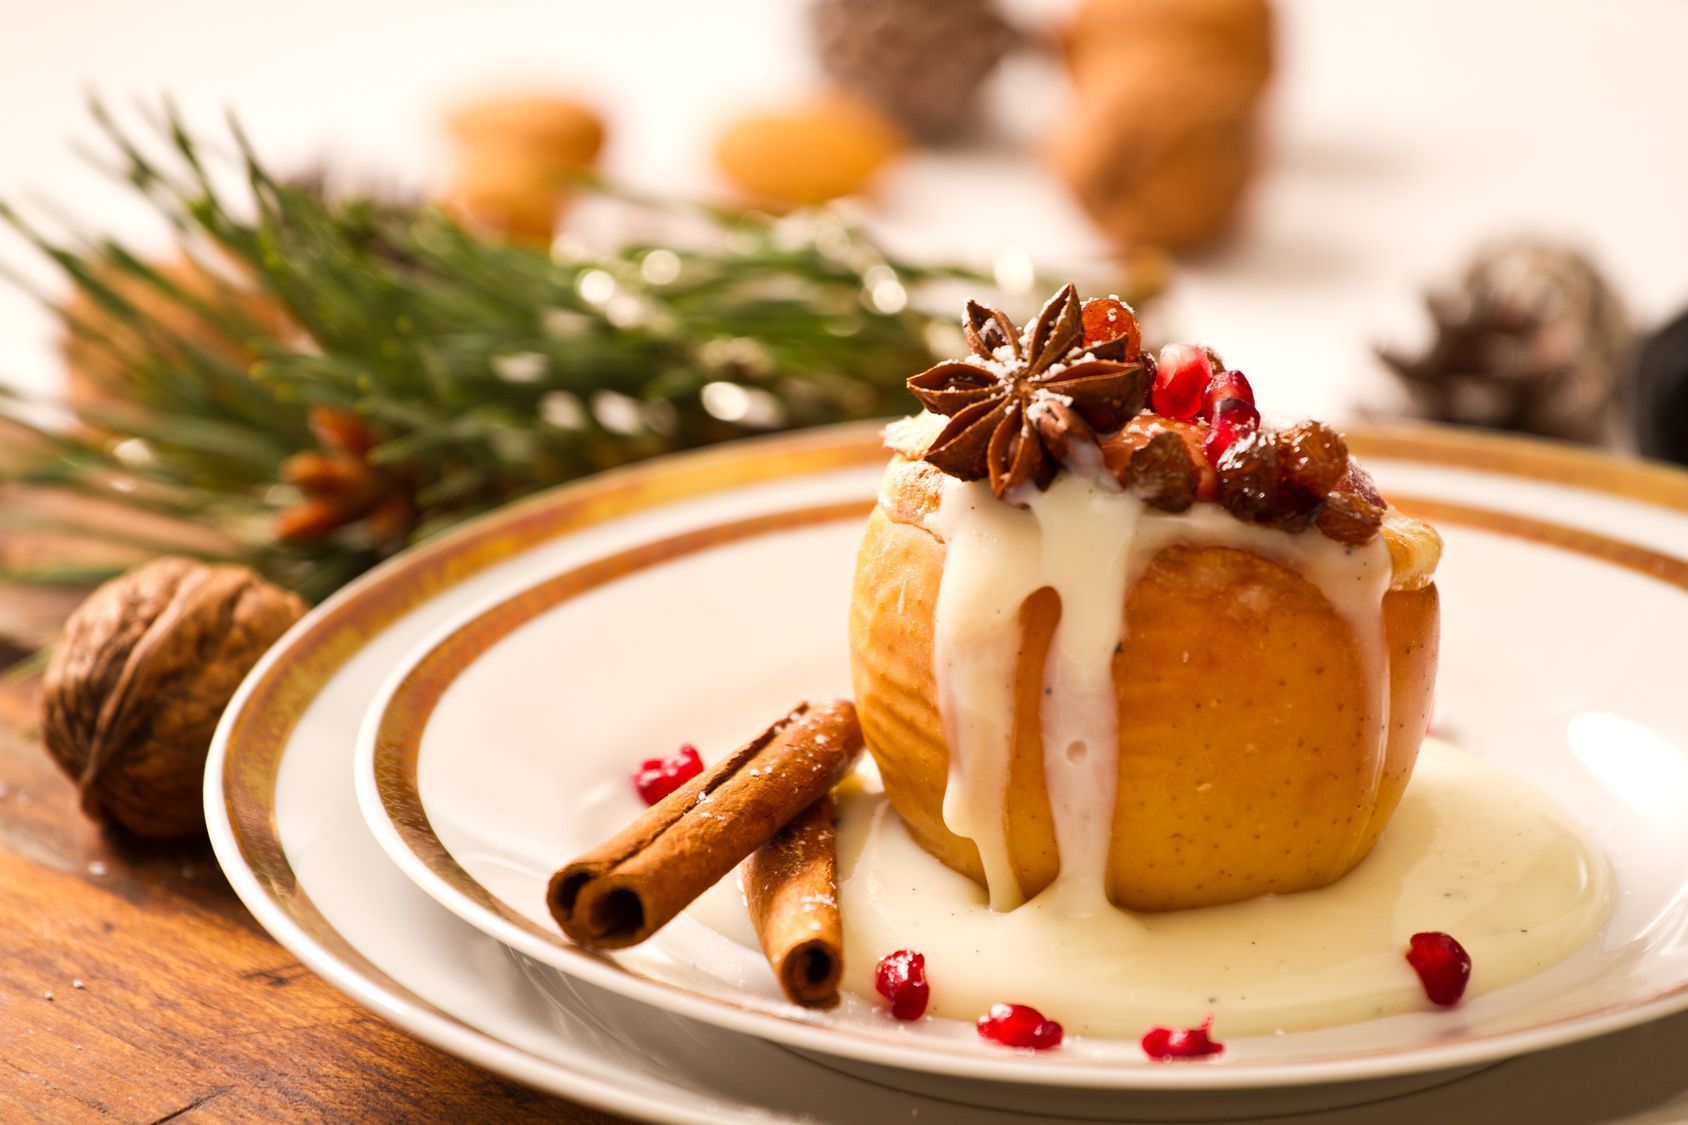 Der Bratapfel gehört definitiv in die Topliste der Weihnachtsdessert-Rezepte.